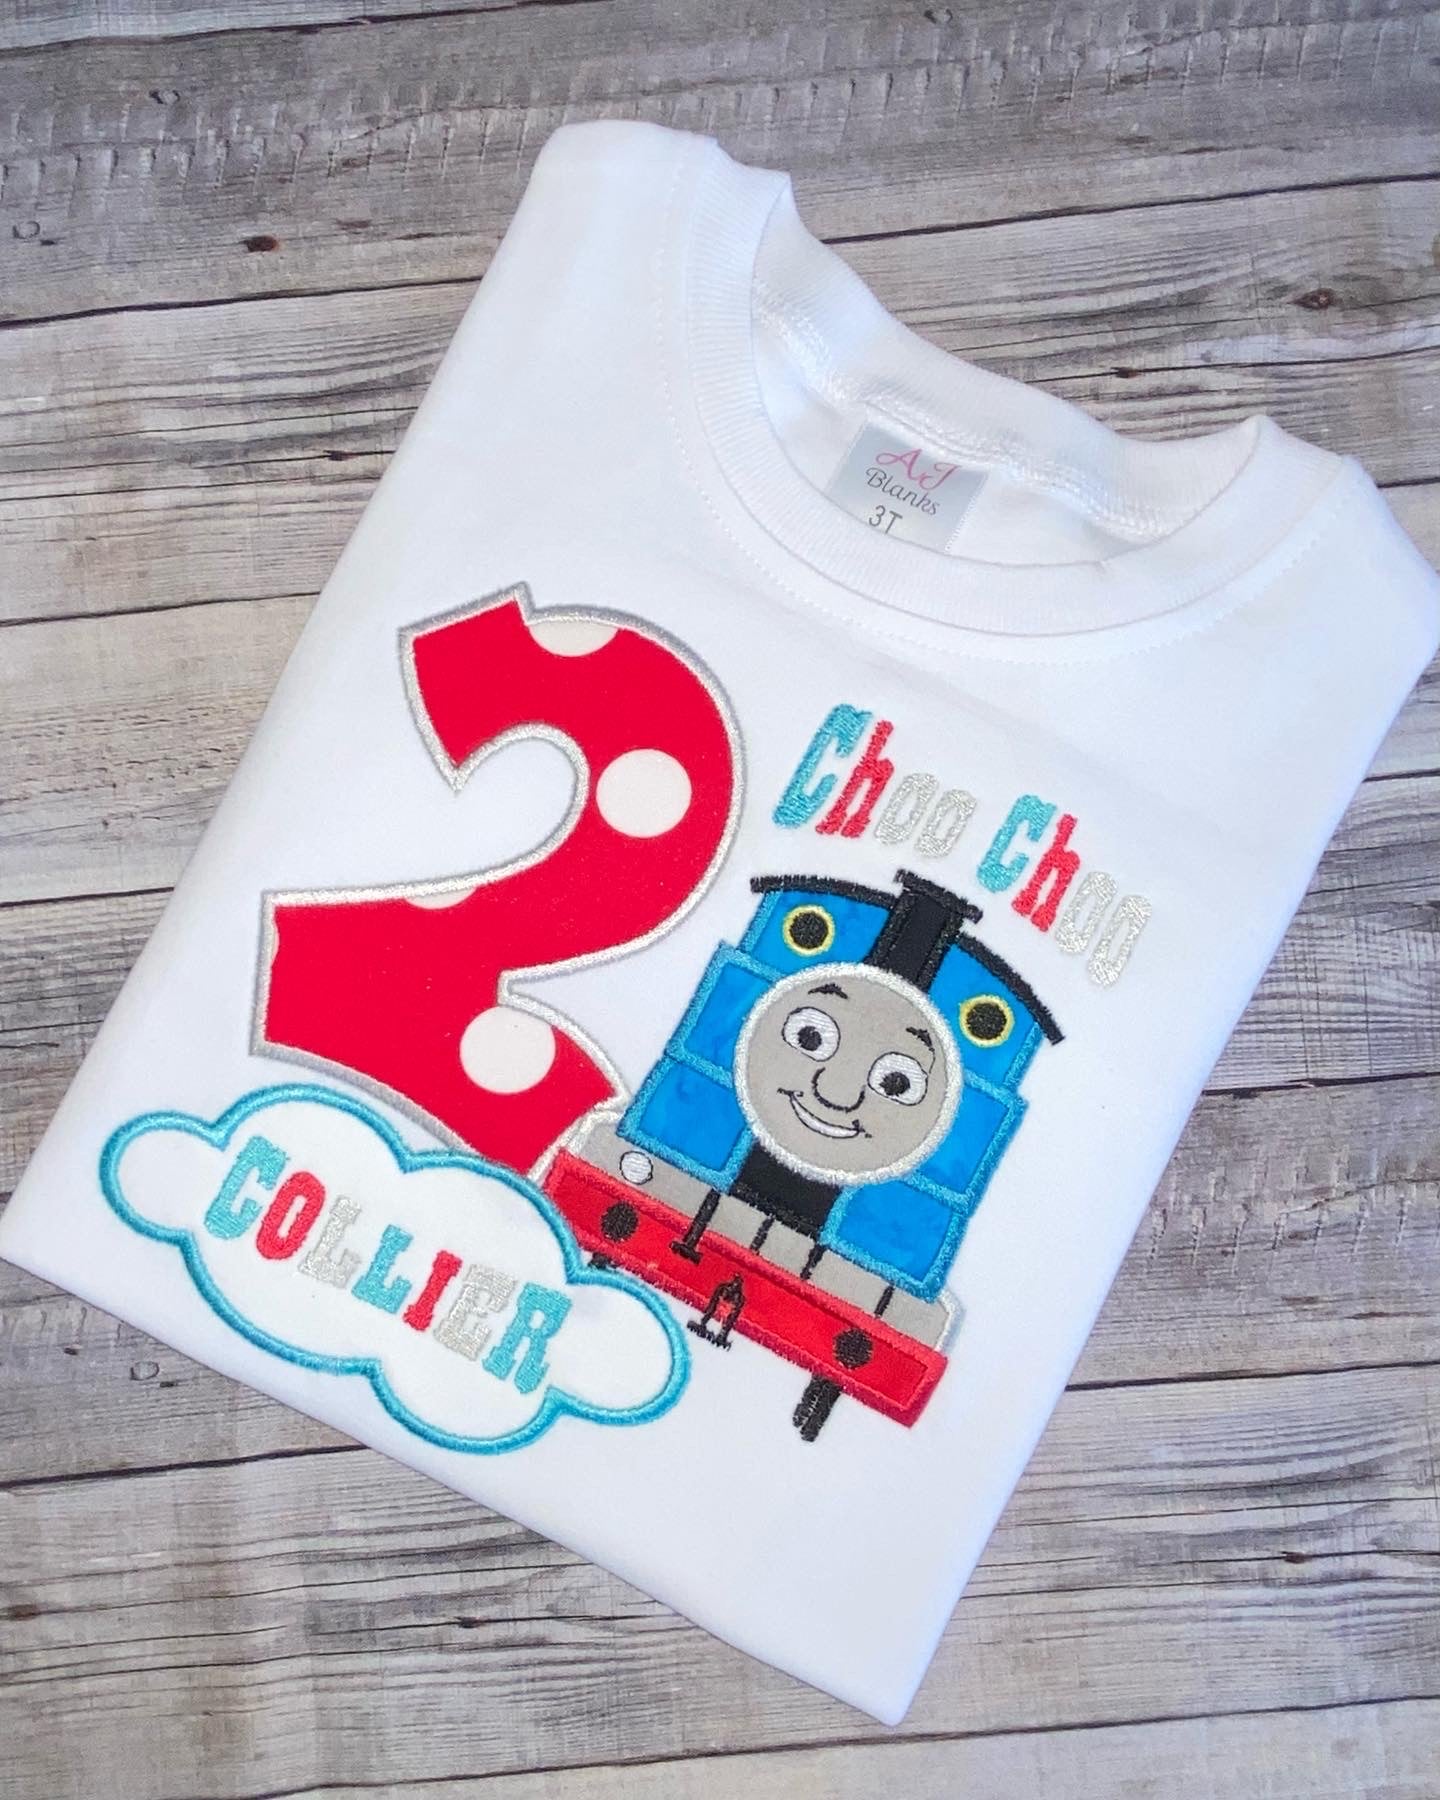 Thomas the train birthday shirt for boys